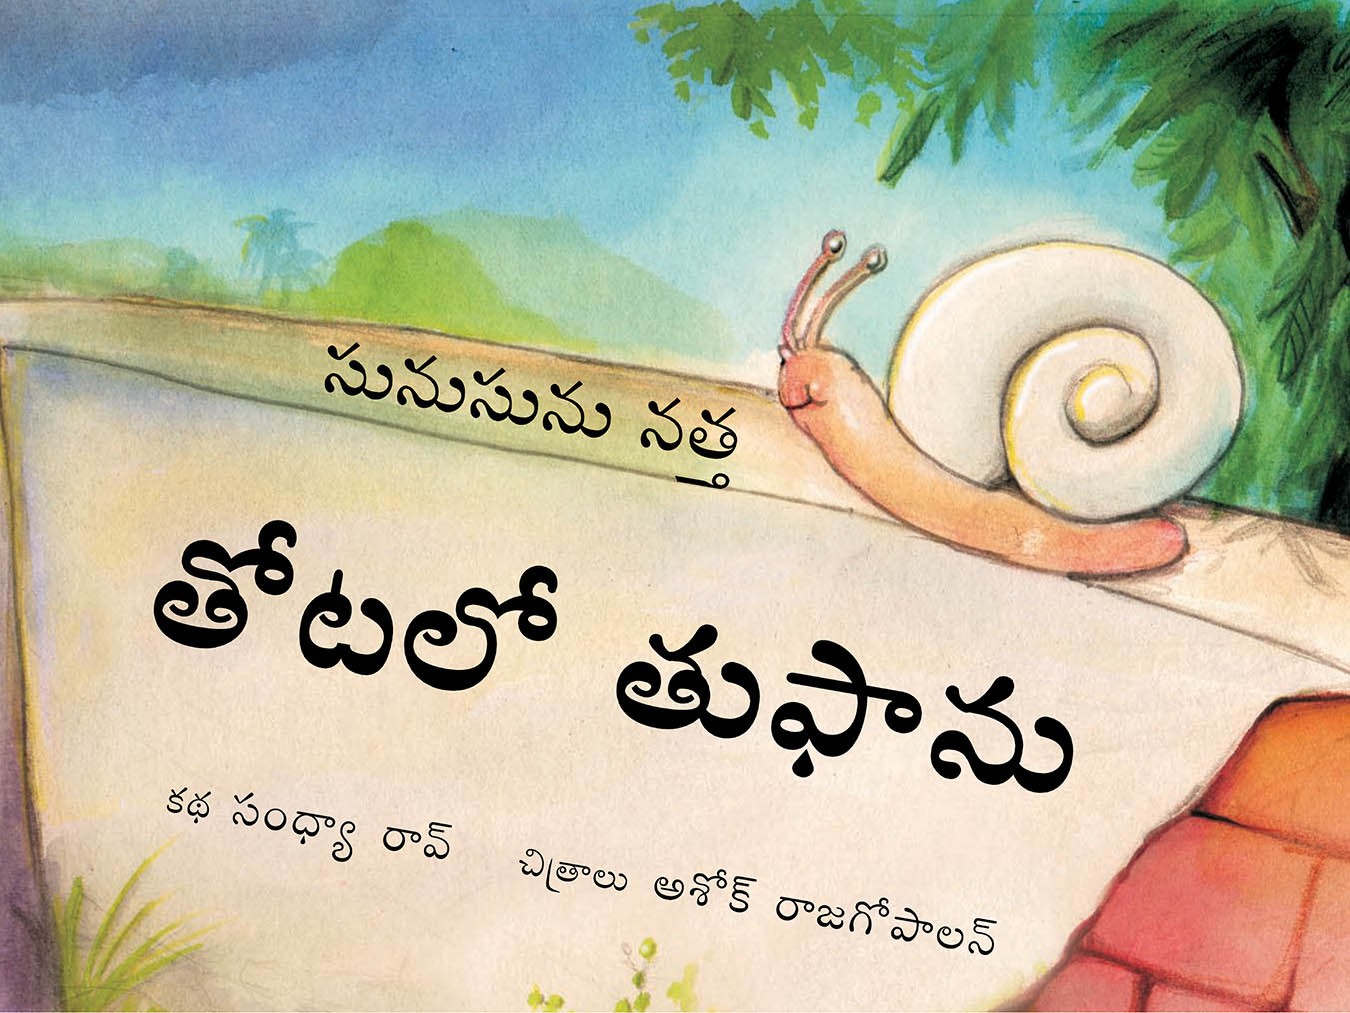 Sunu-sunu Snail: Storm in the Garden/Sunusunu Natha: Thotalo Tuphanu (Telugu)